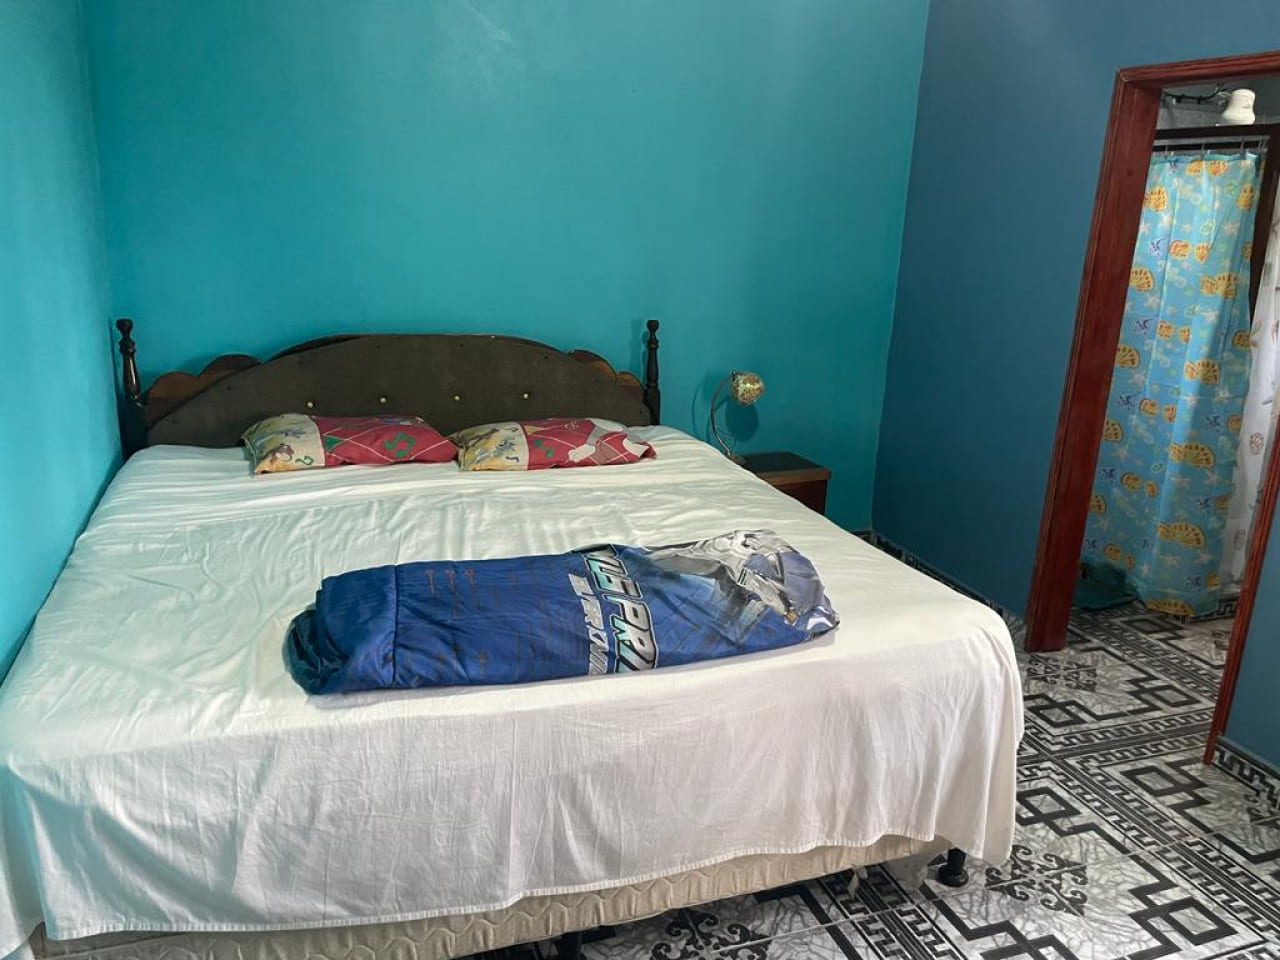 Habitación con cama matrimonial, televisión, piso de cerámica, techo de tabla yeso, pared color azul y baño privado.